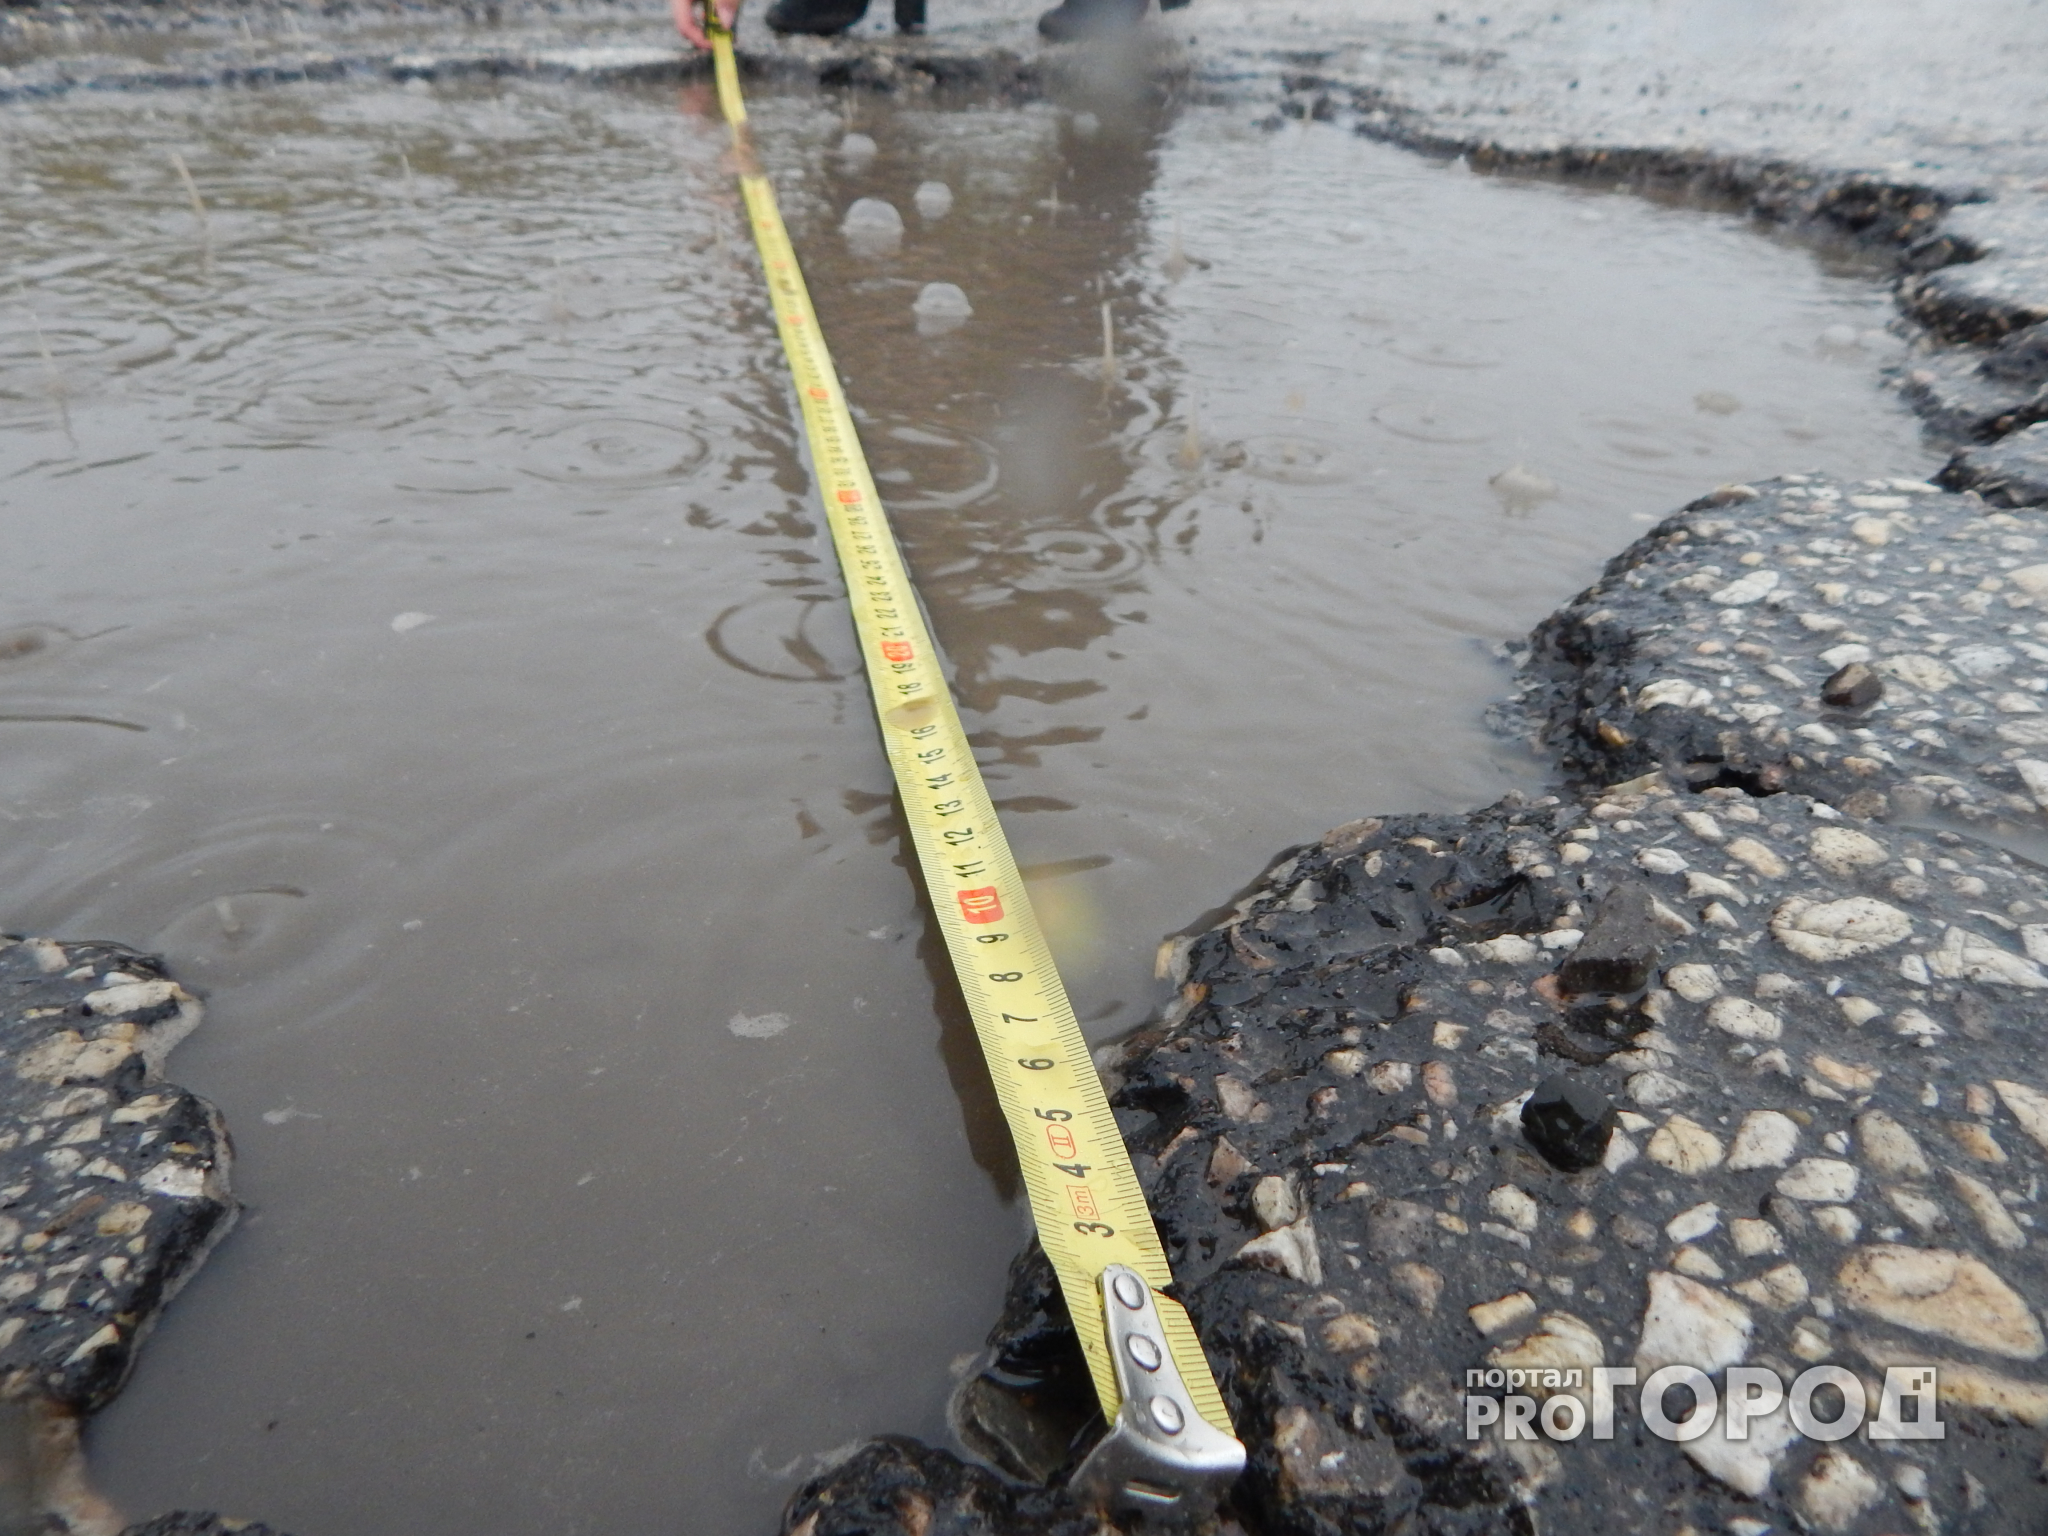 Портал ProГород измерил ямы на дороге Ухта-Ярега